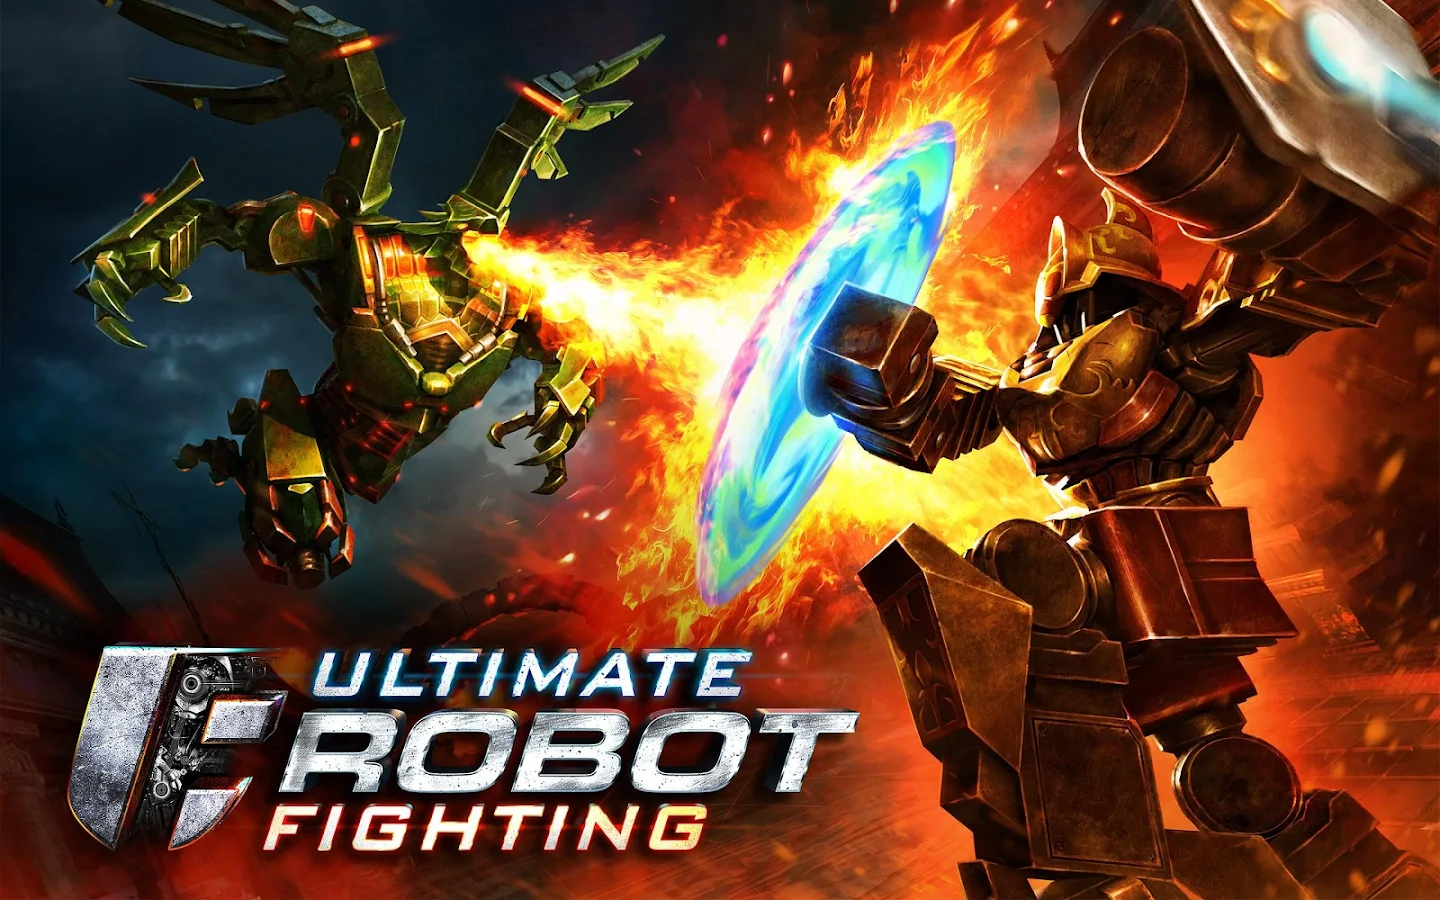   Ultimate Robot Fighting: captura de tela 